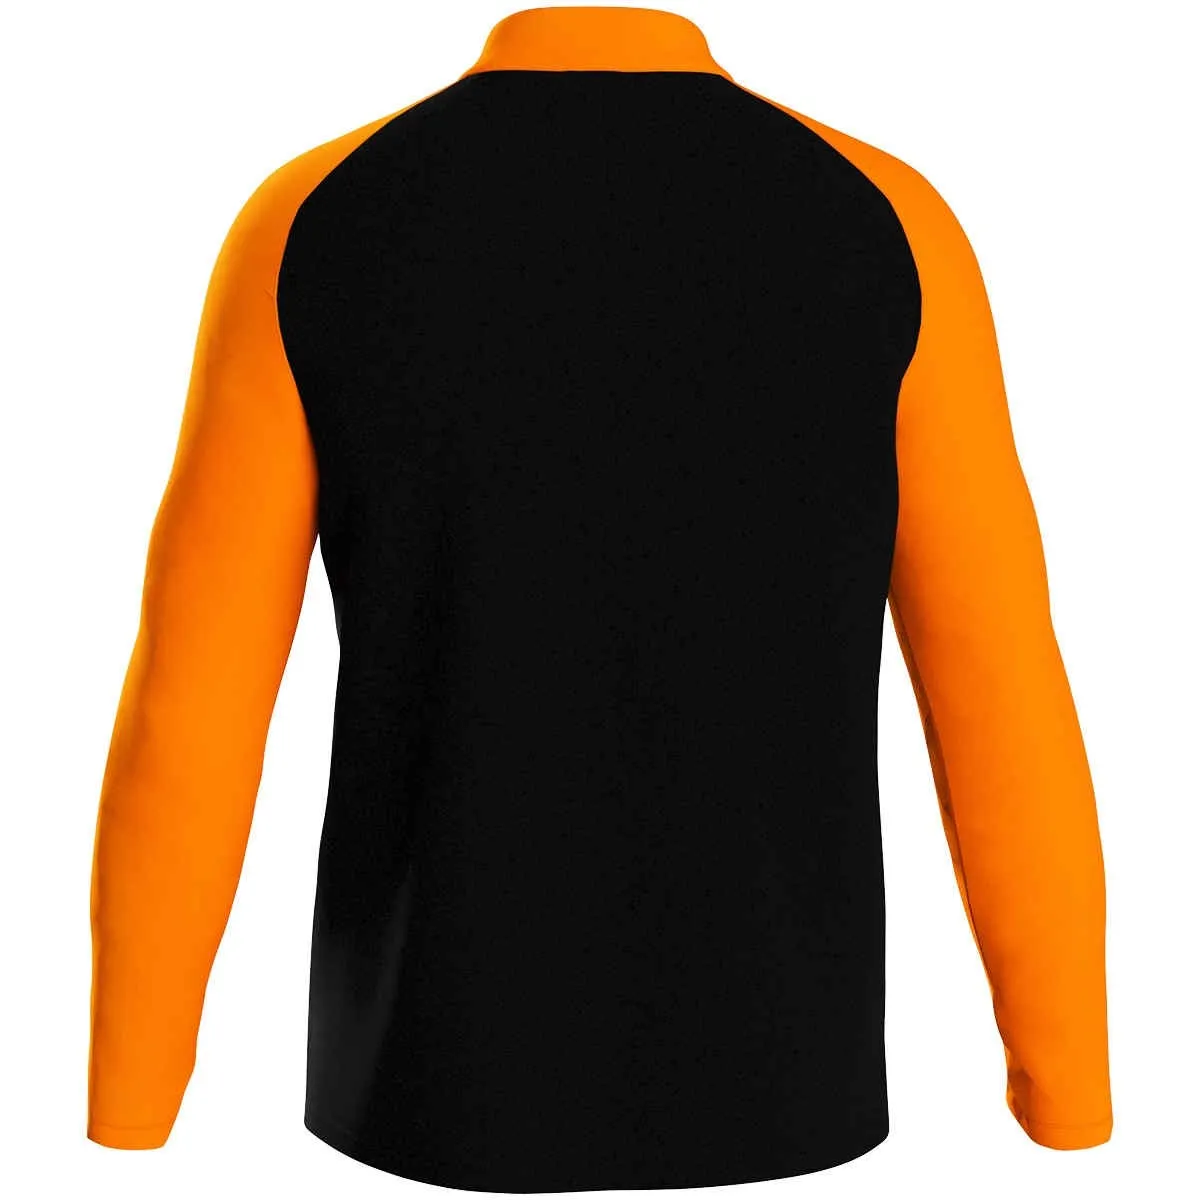 JAKO polyester jacket Iconic black/neon orange